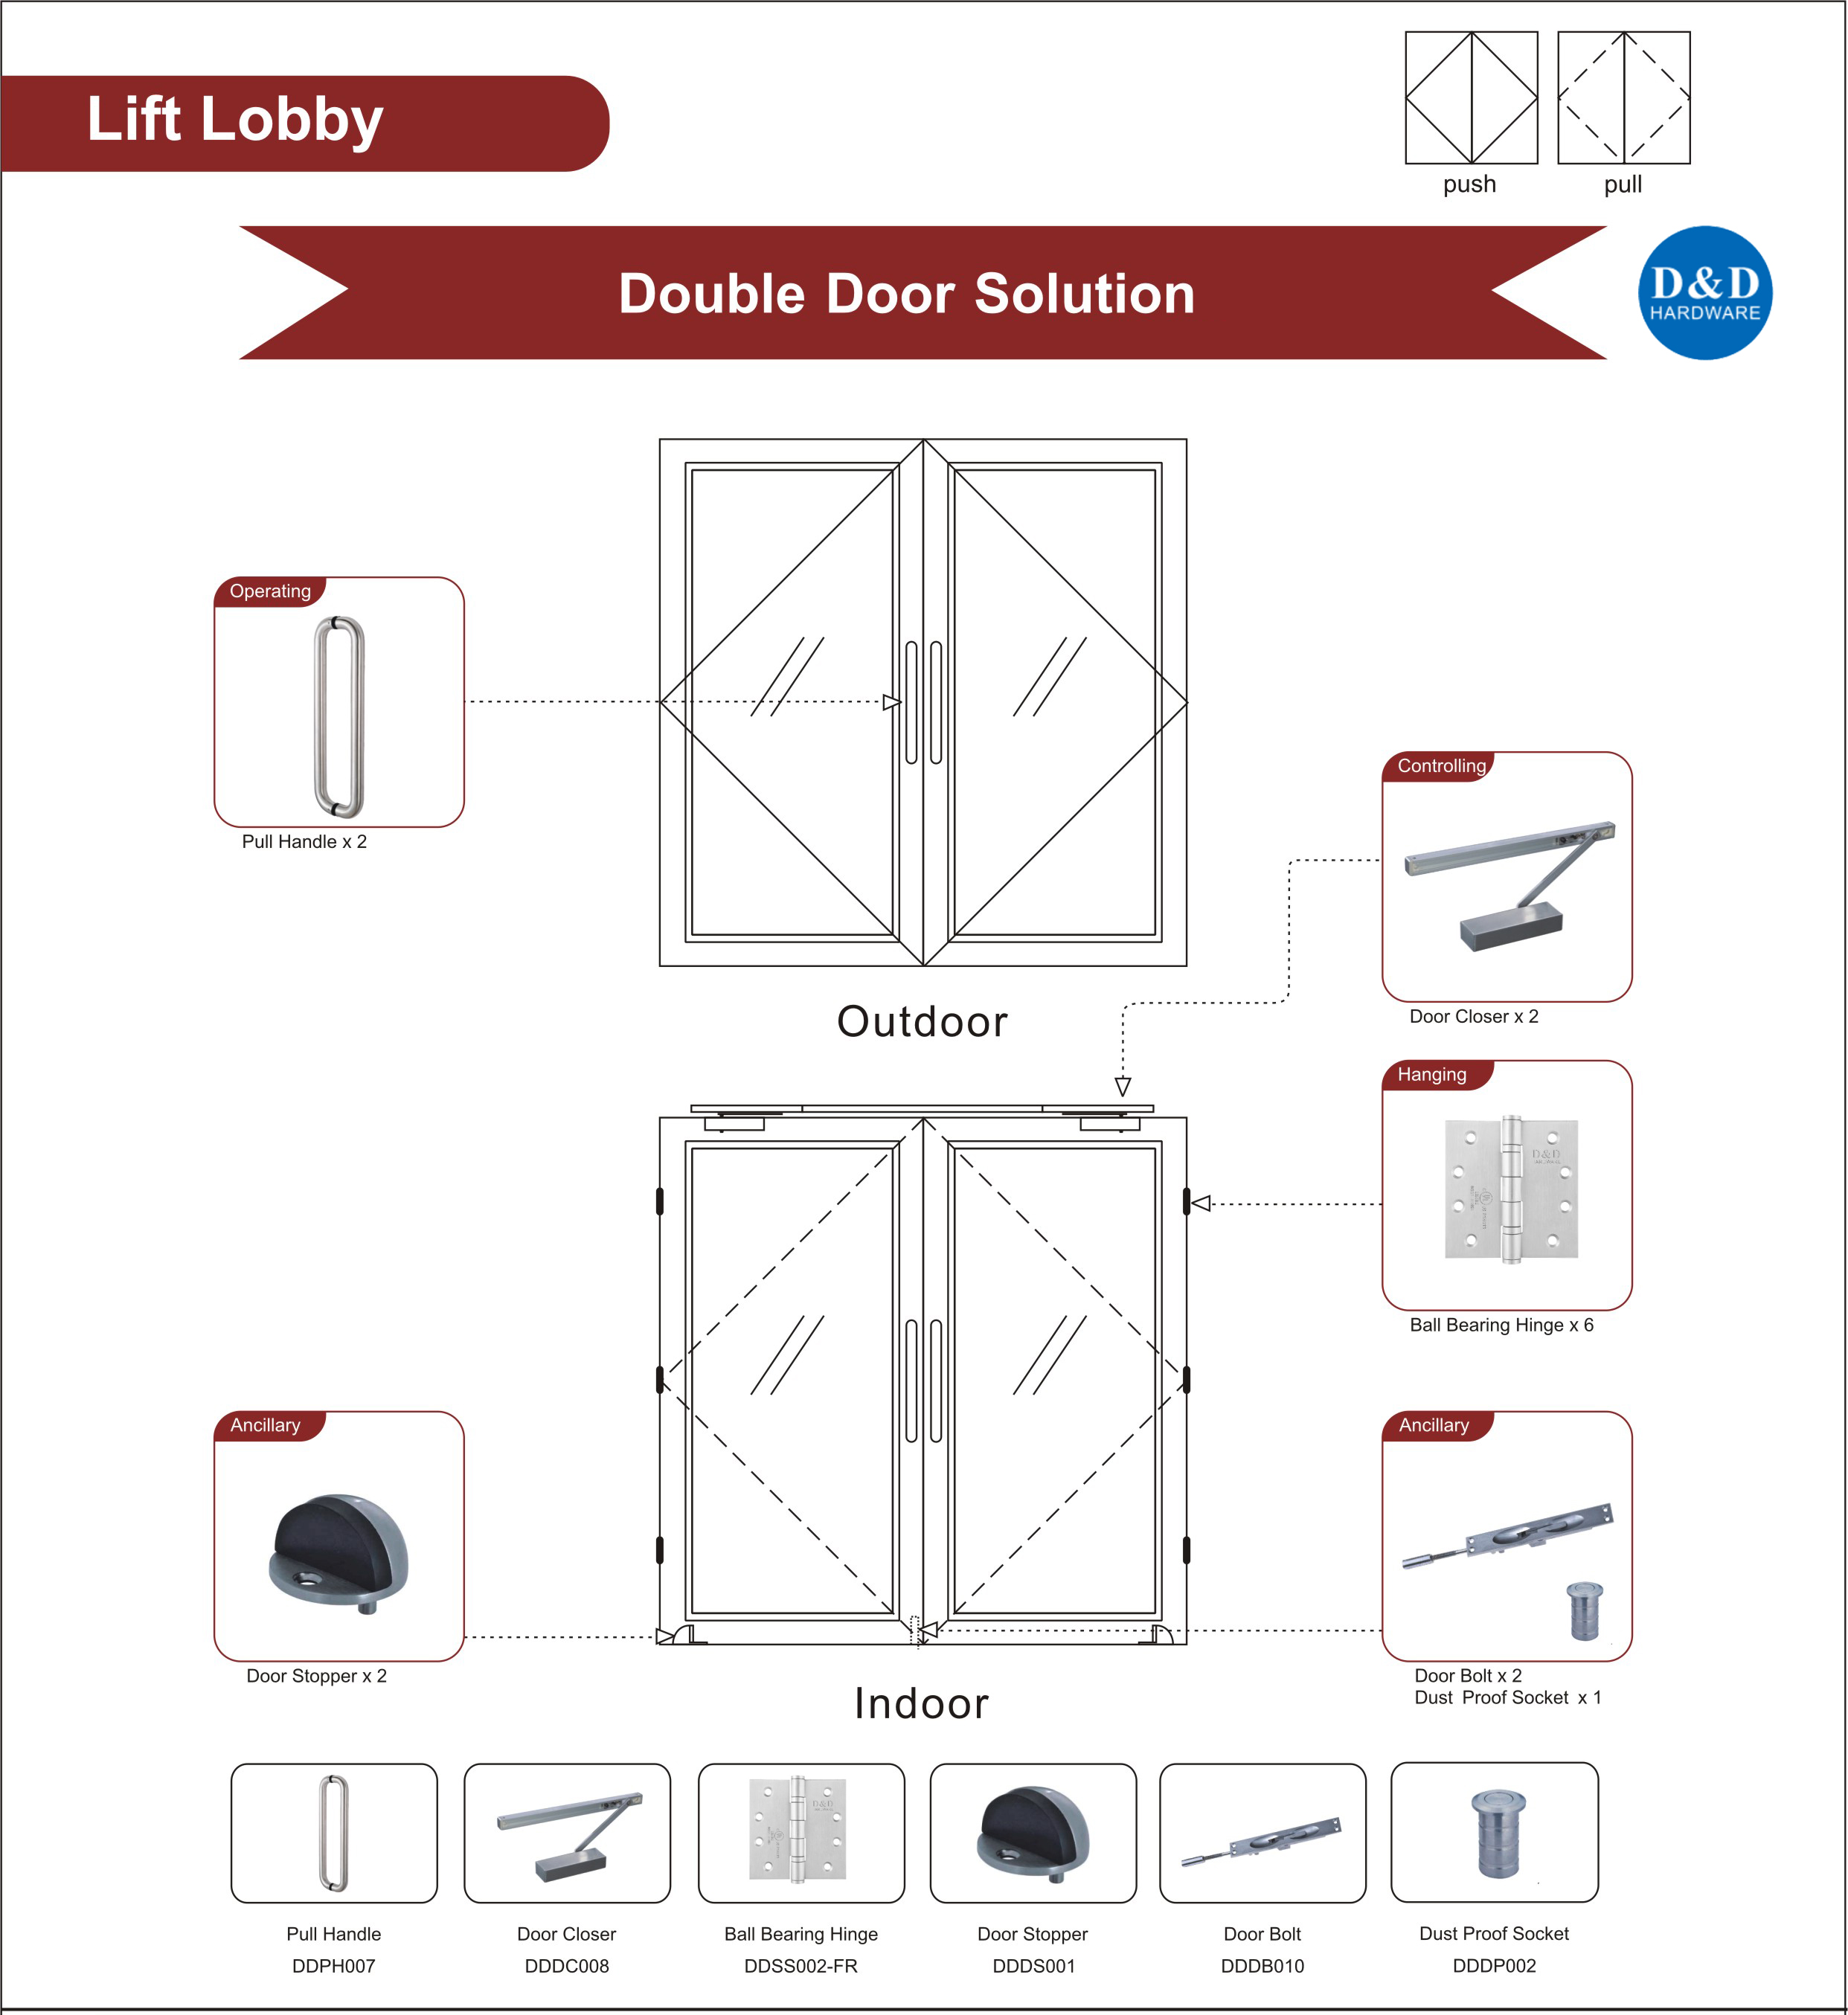 Fire Rated Glass Door Ironmongery for Lift Lobby Double Door